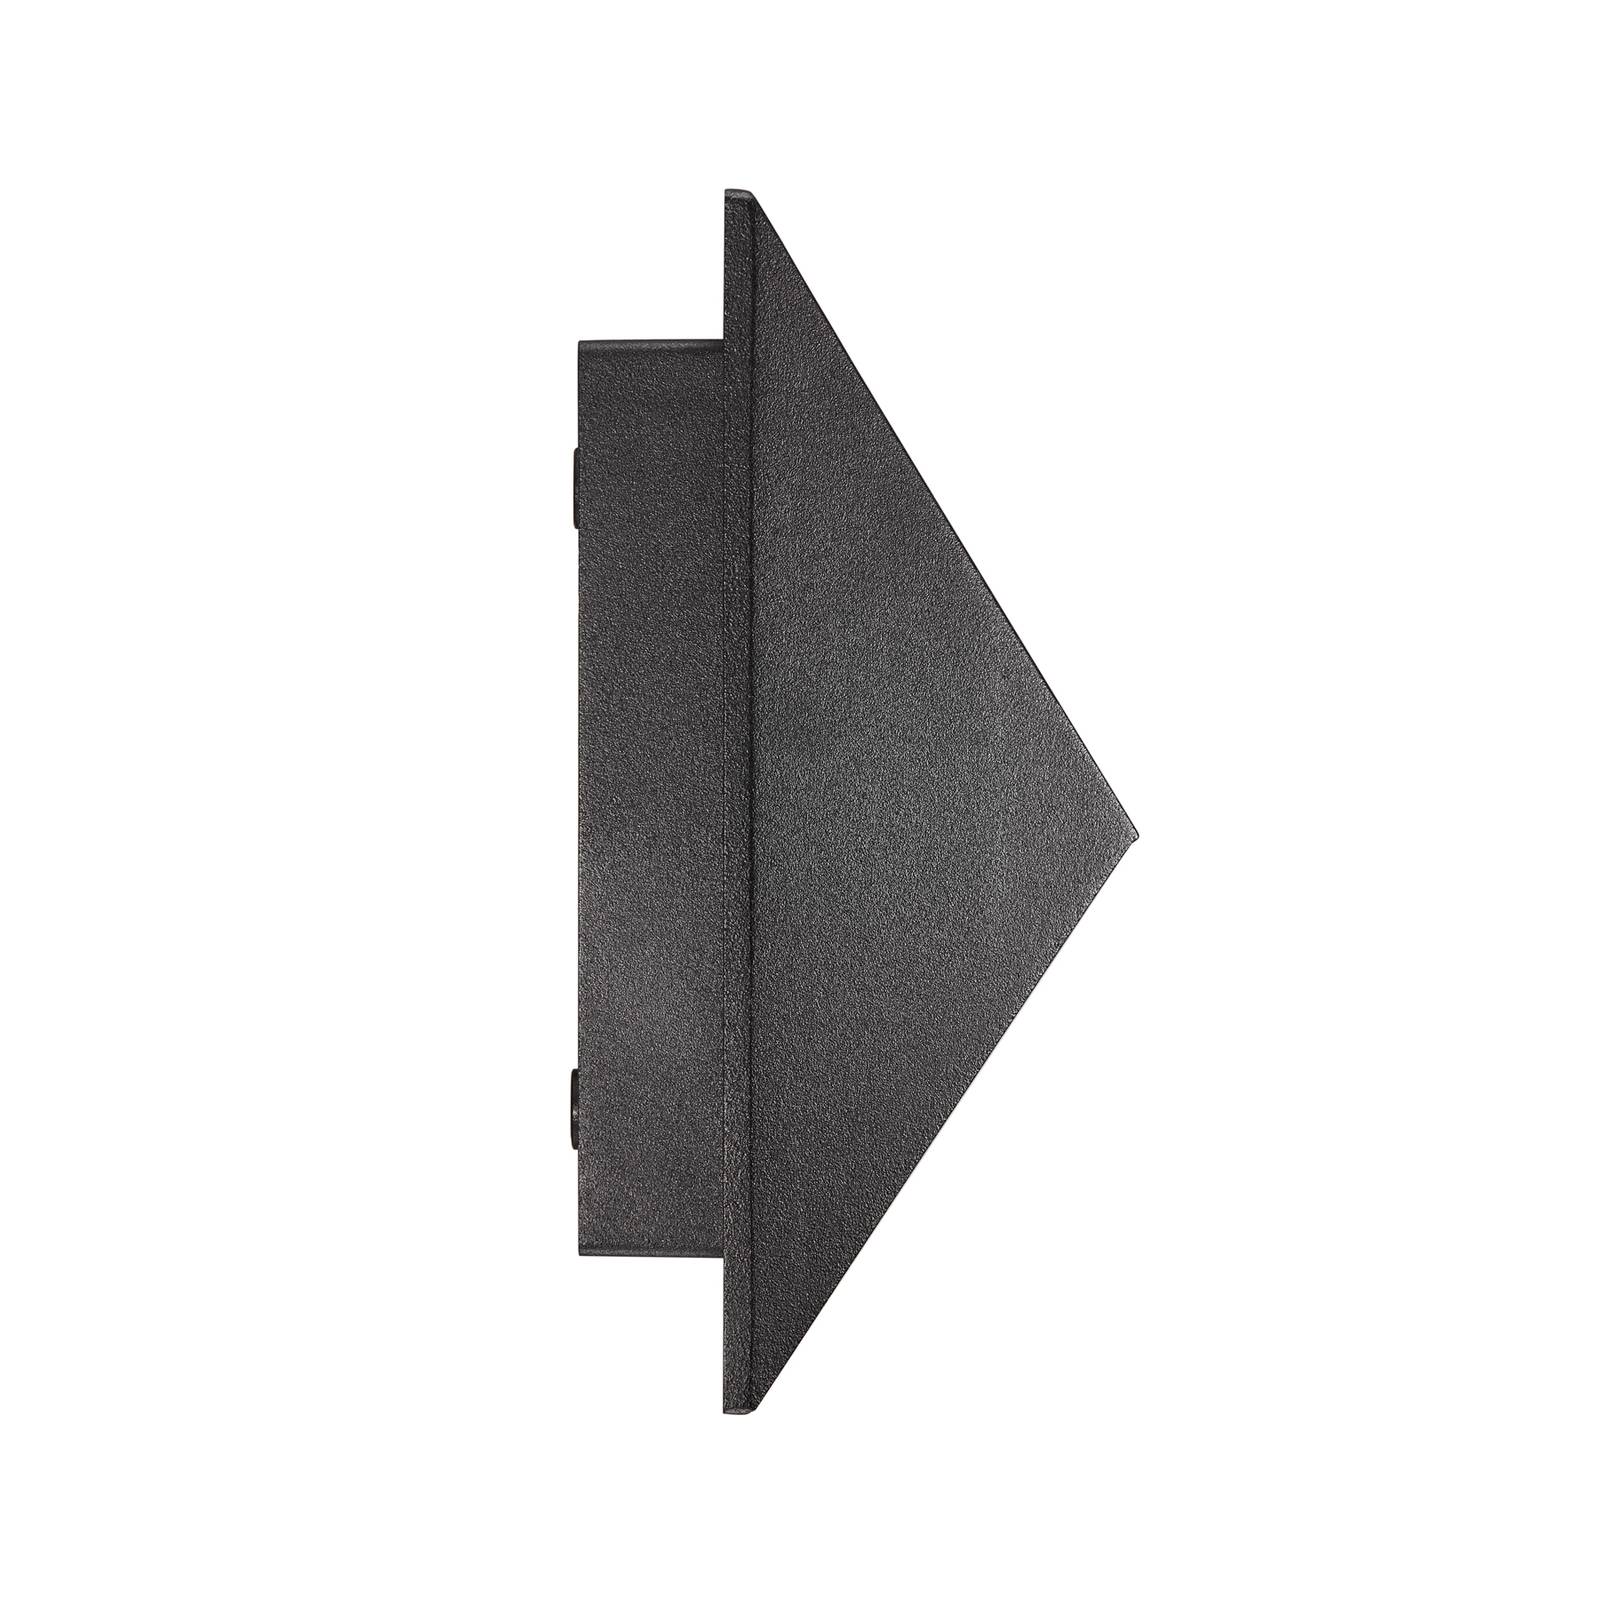 Pontio 15 utendørs vegglampe bredde 15 cm svart